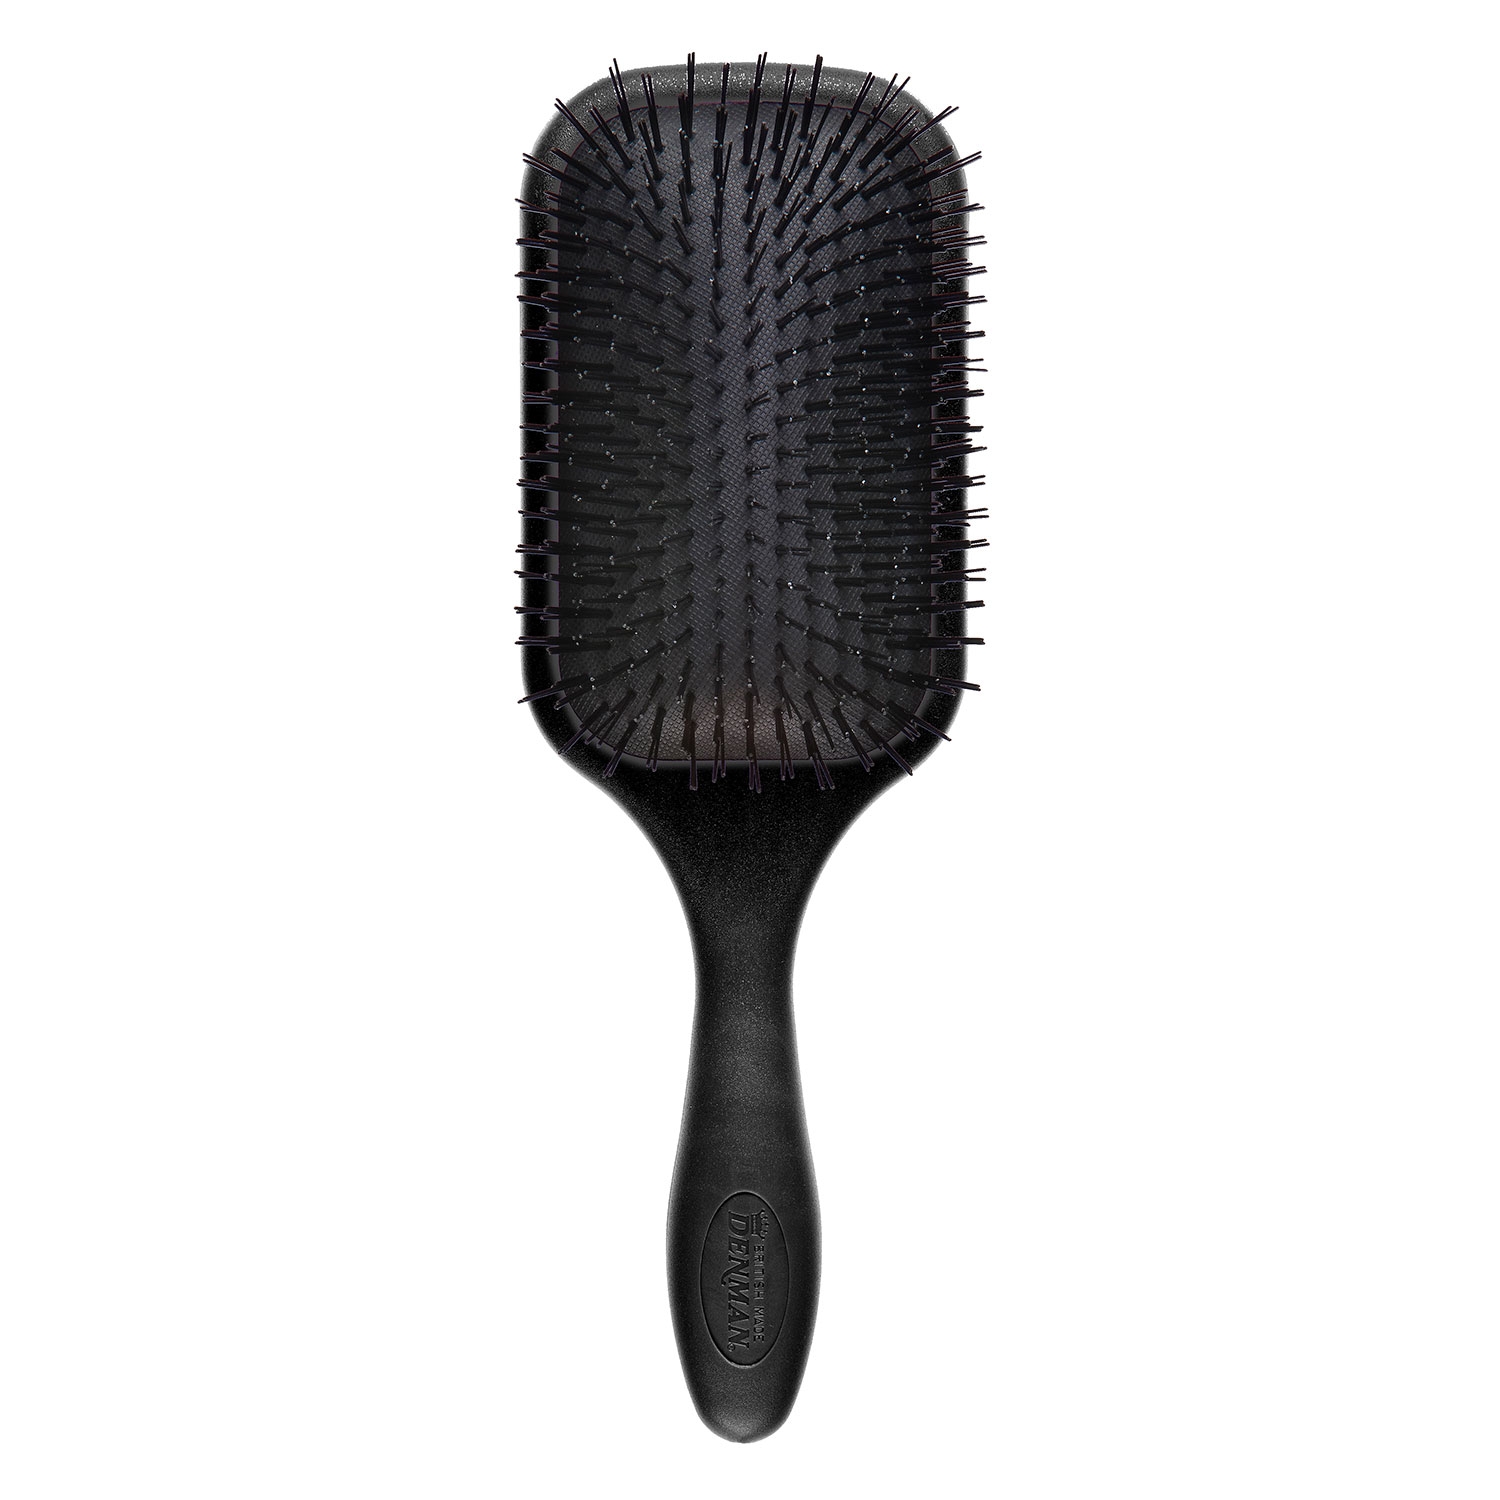 Produktbild von Tangle Tamer - Detangling-Brush black